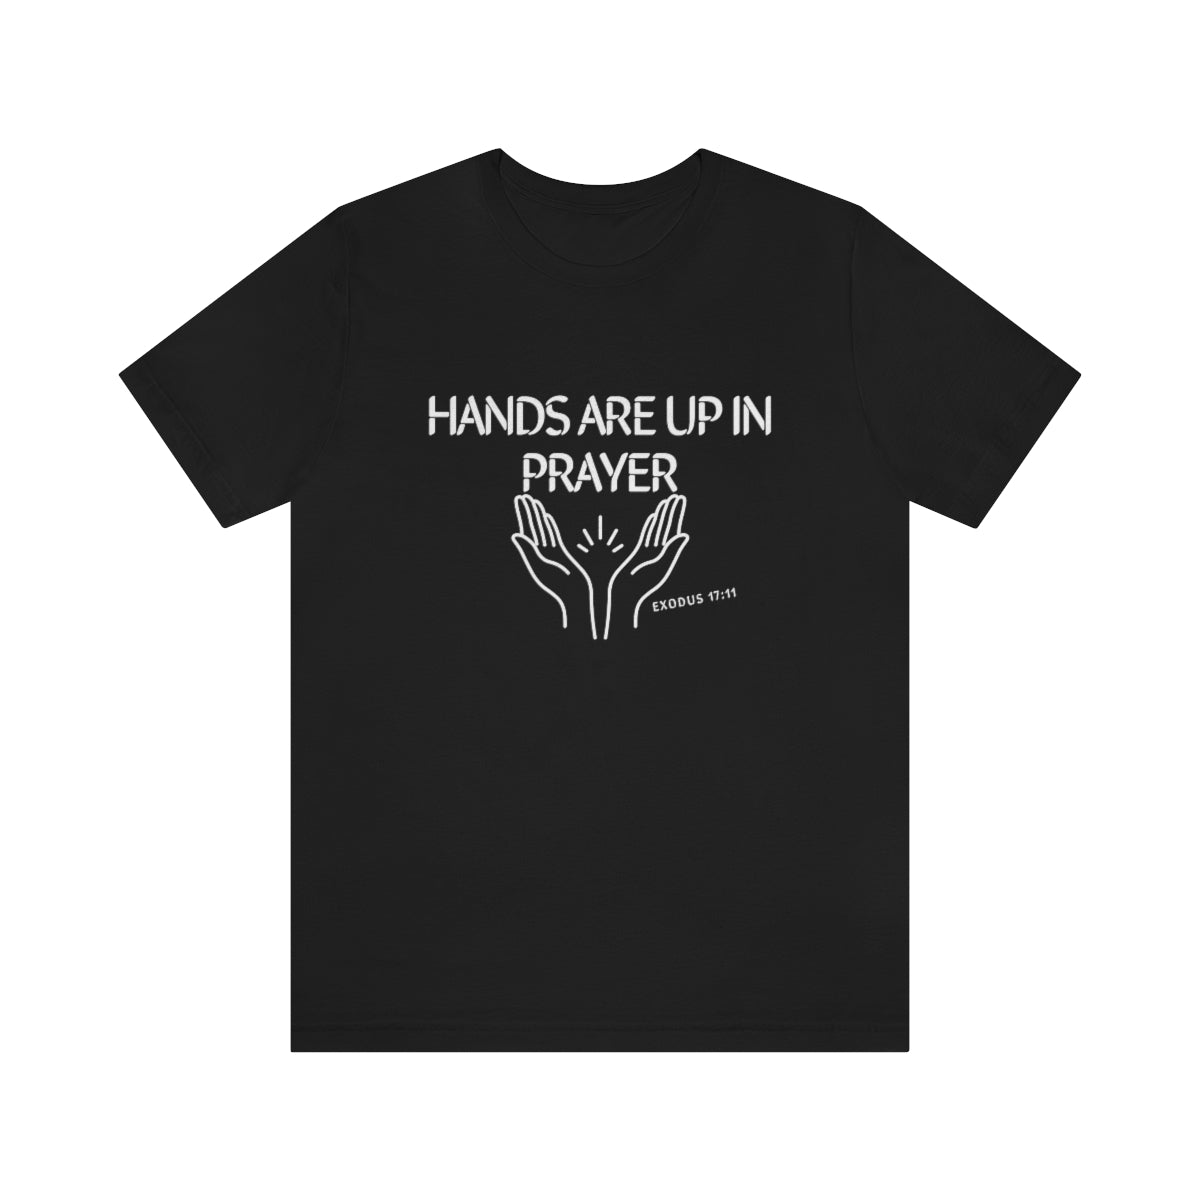 HANDS UP IN PRAYER T-SHIRT-T-Shirt-Black-S-mysticalcherry